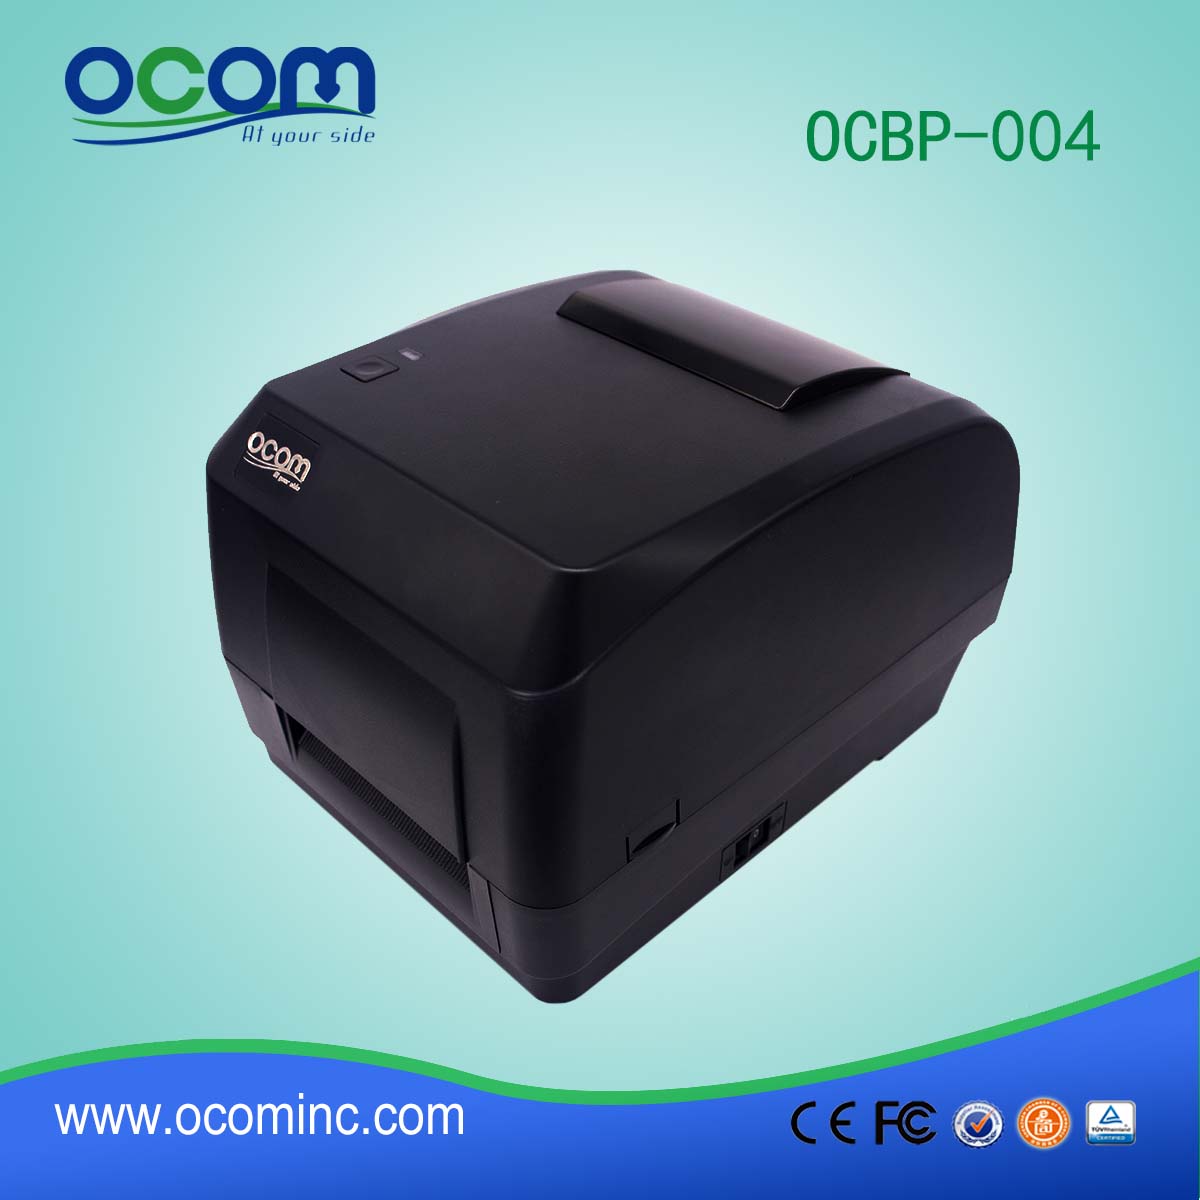 OCBP-004--2016 stampante di etichette termica nuovo design di alta qualità, stampante di etichette termiche, stampante termica etichette